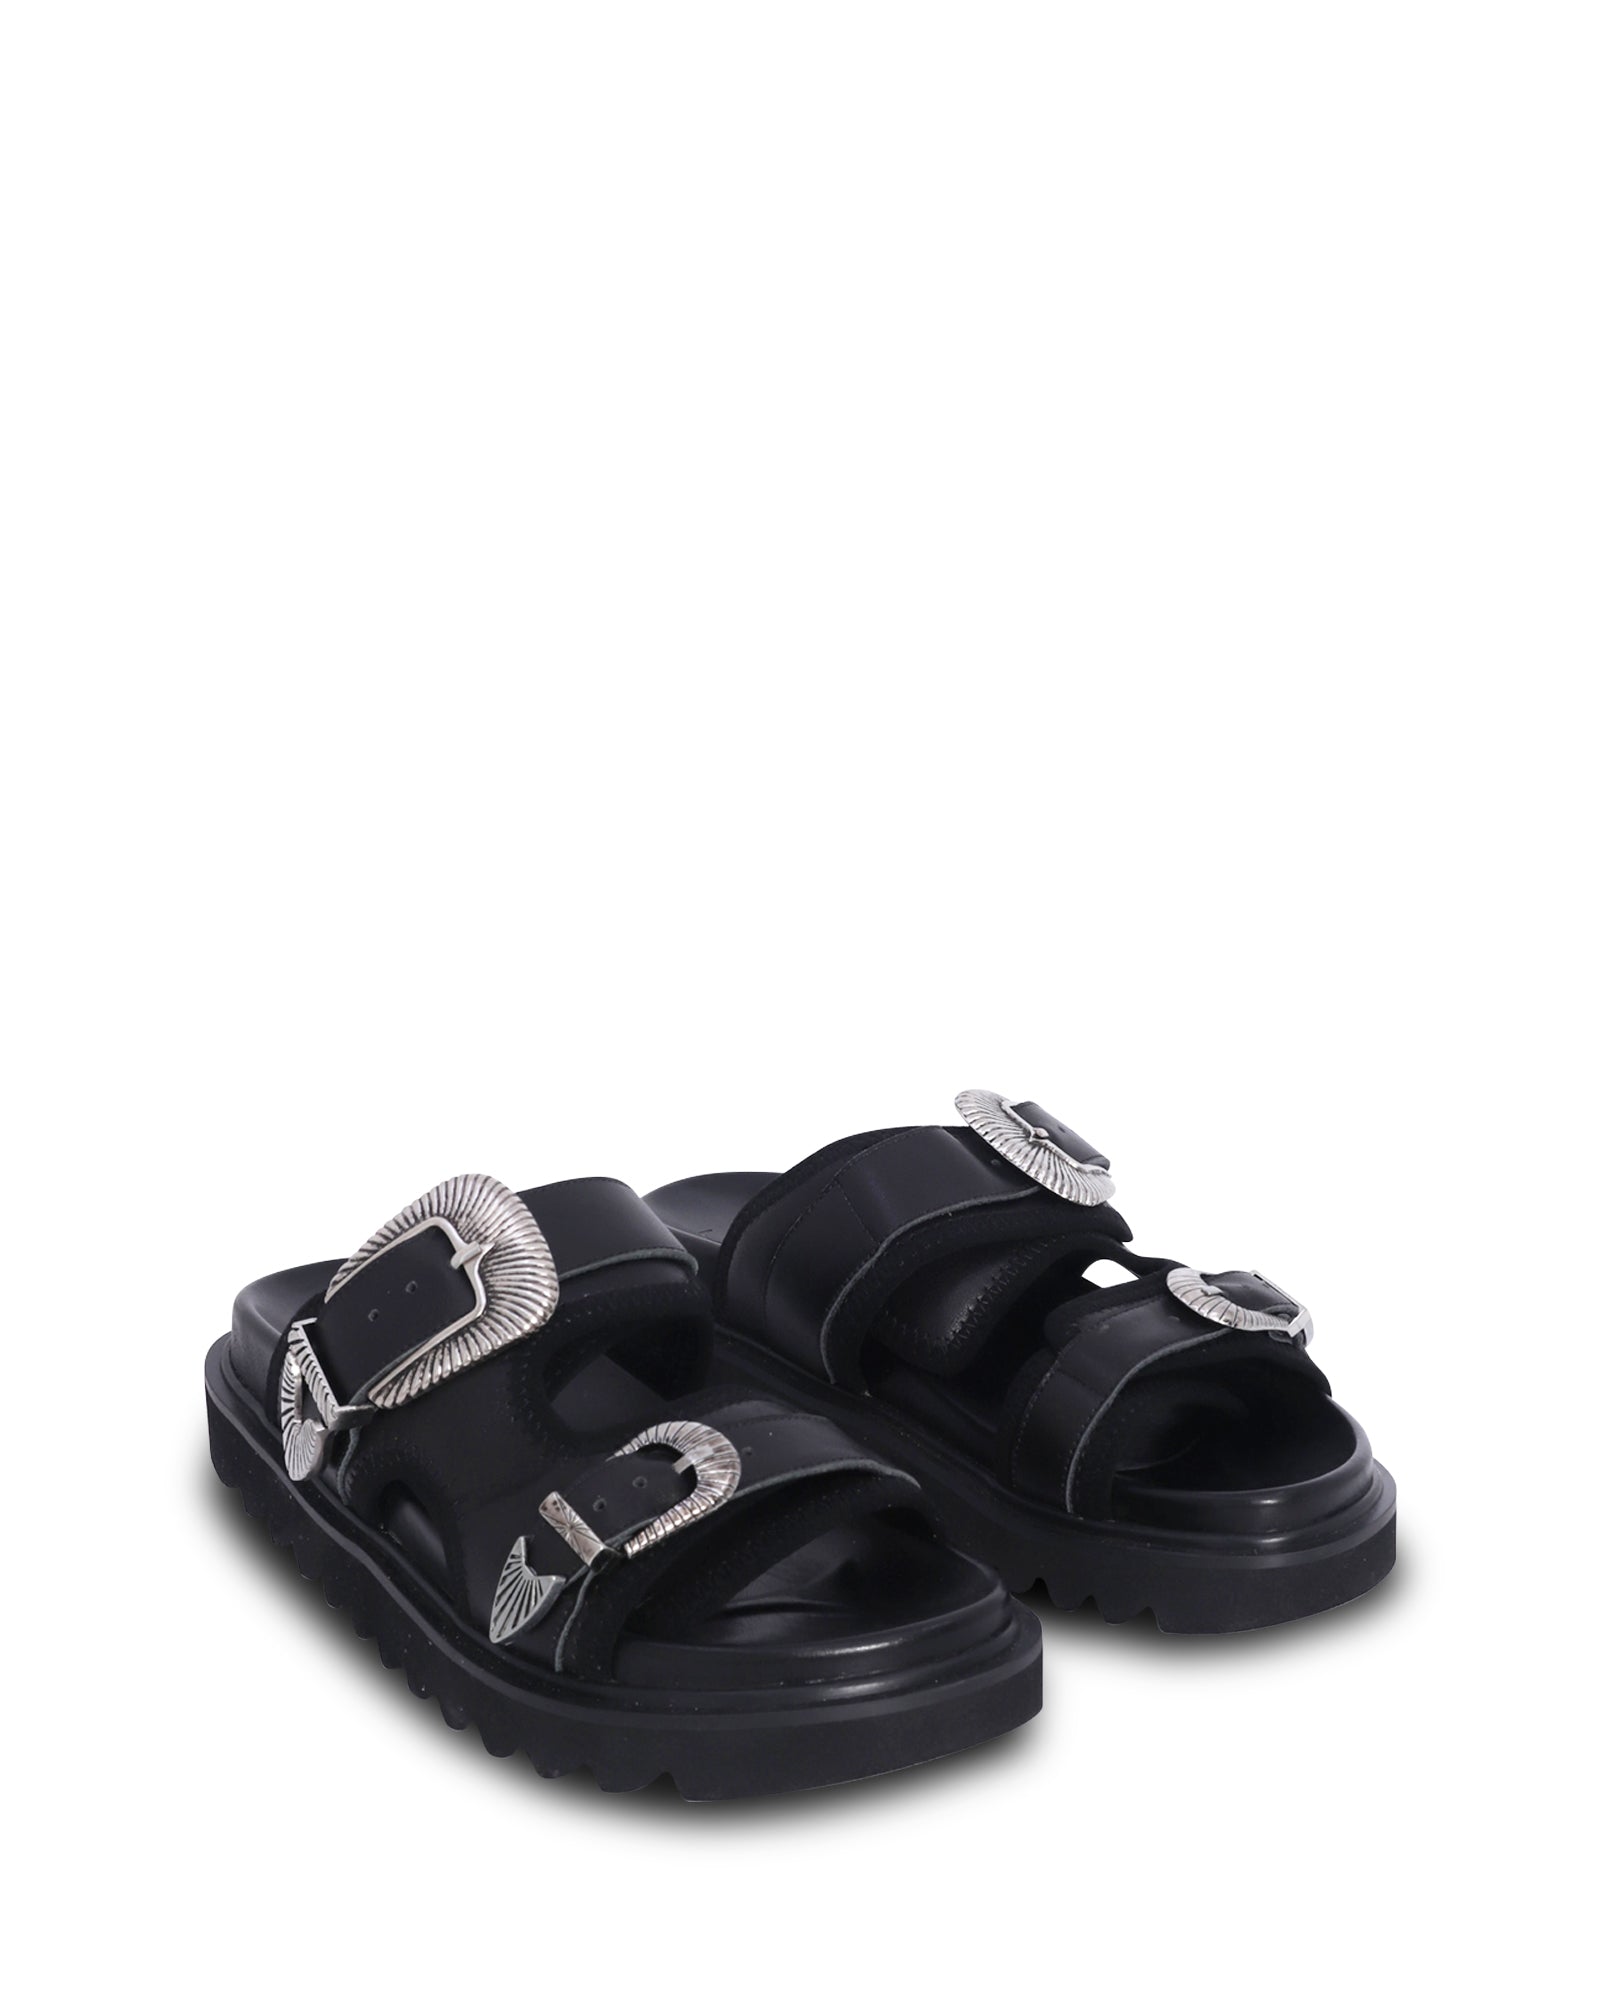 Torres Black 2.5cm Sandal